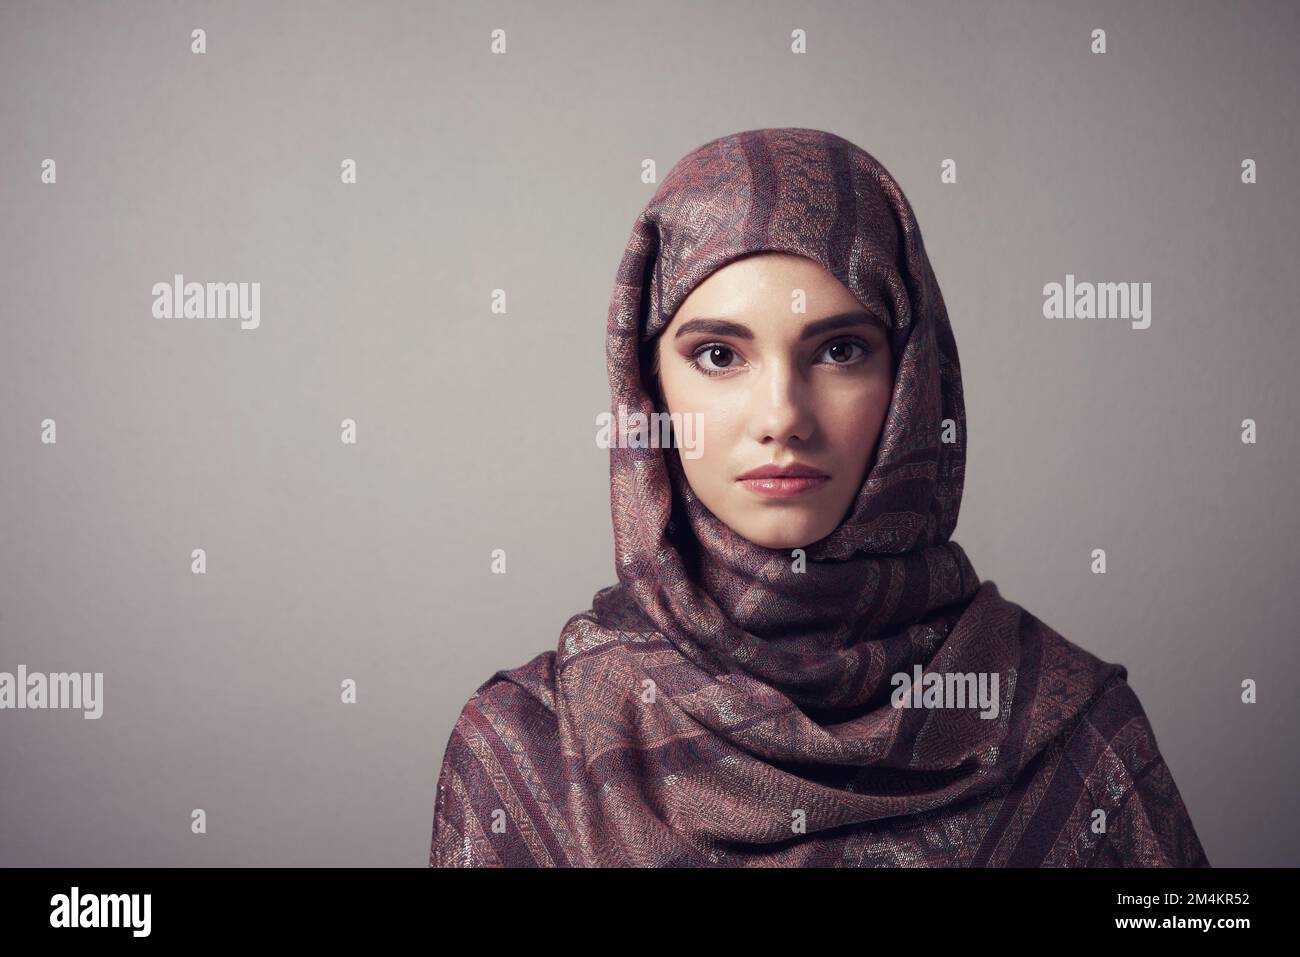 Erstaunlich selten. Studioporträt einer fröhlichen jungen Frau, die ein farbenfrohes Kopftuch trägt, während sie vor grauem Hintergrund posiert. Stockfoto